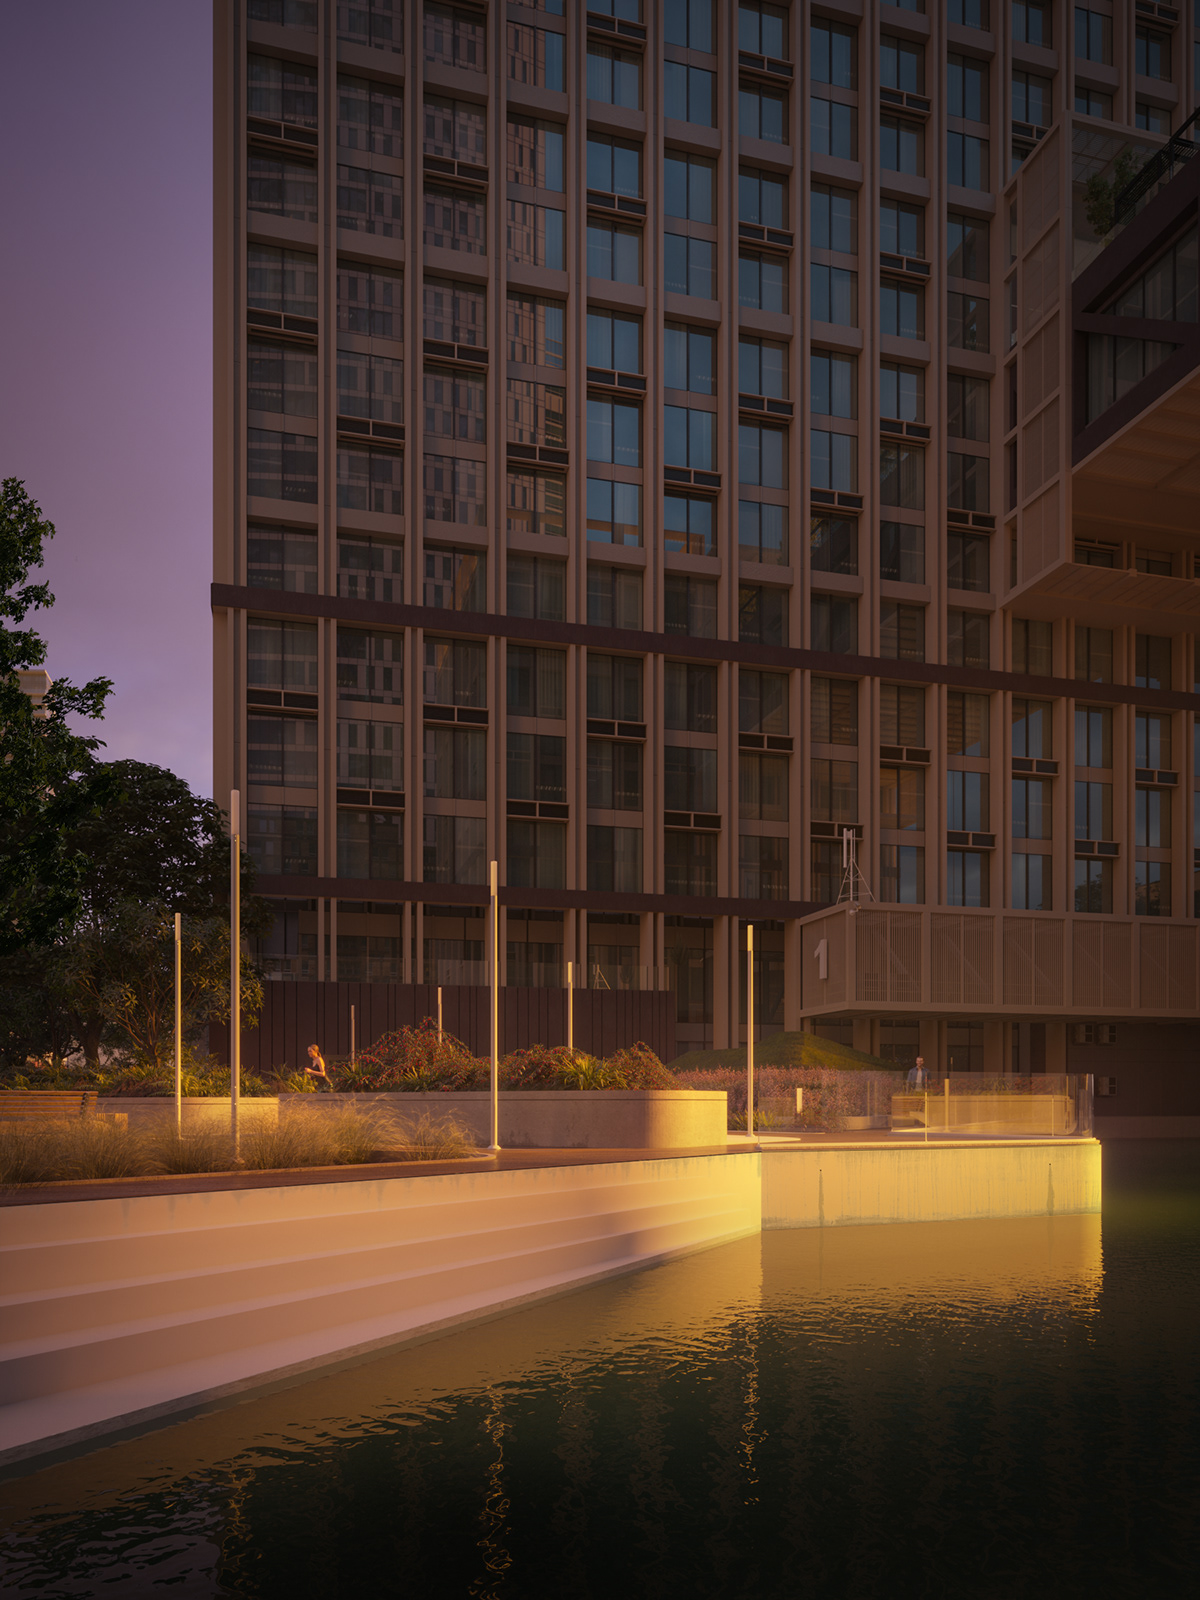 3ds max apartment architecture city corona render  design Landscape Park Render visualization